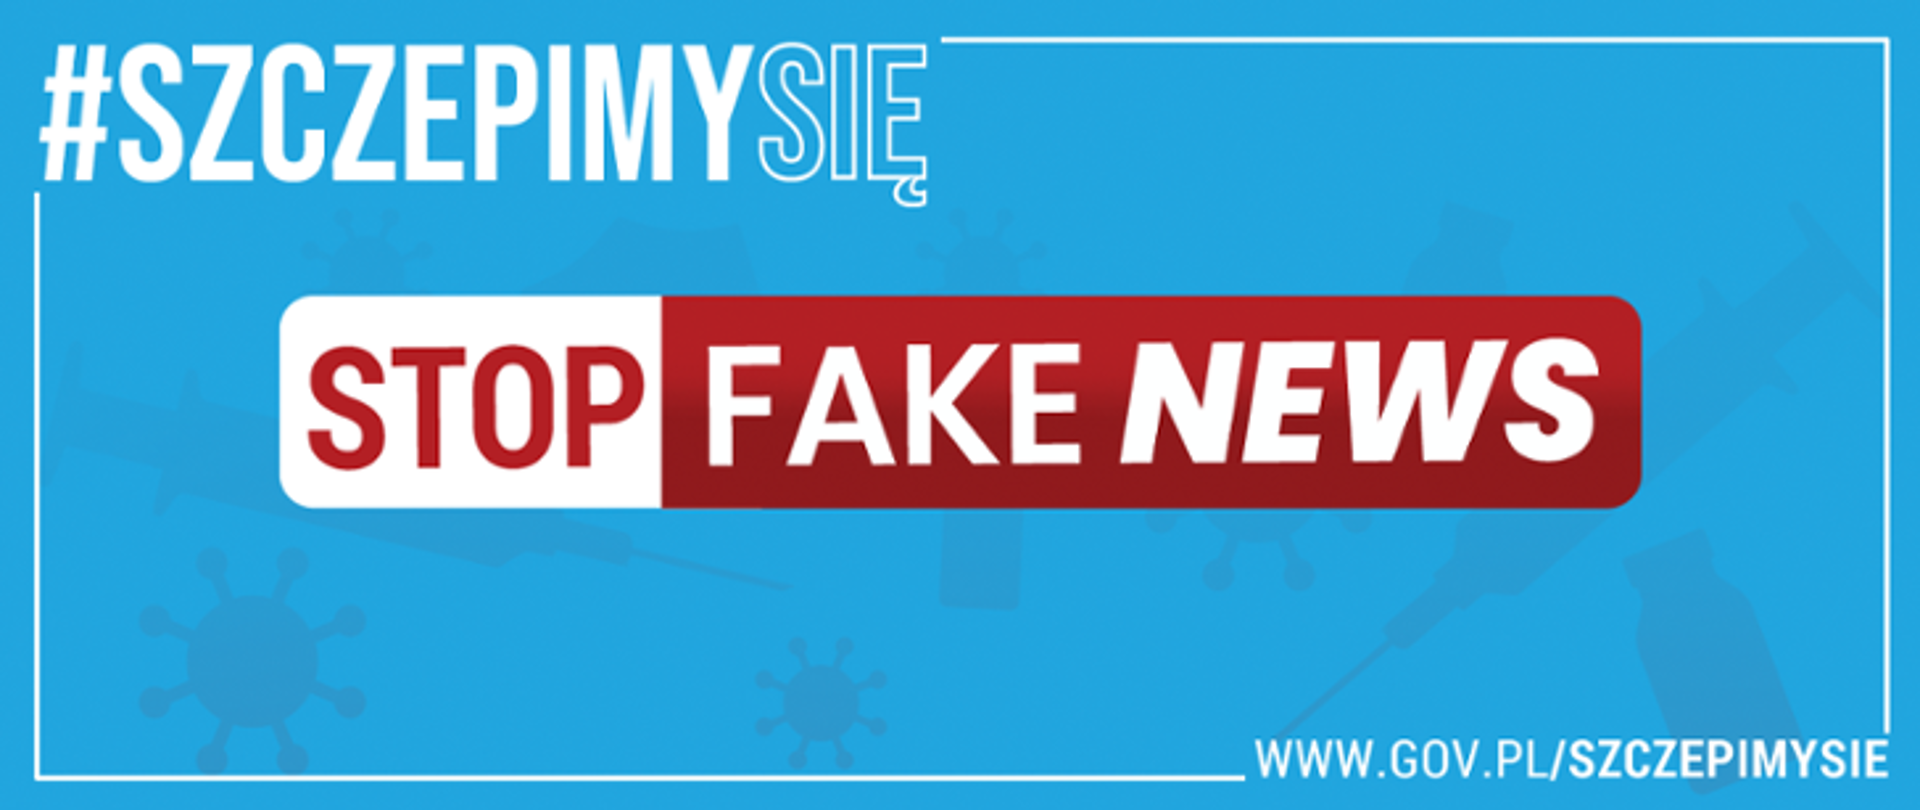 Szczepimy się - stop fake news